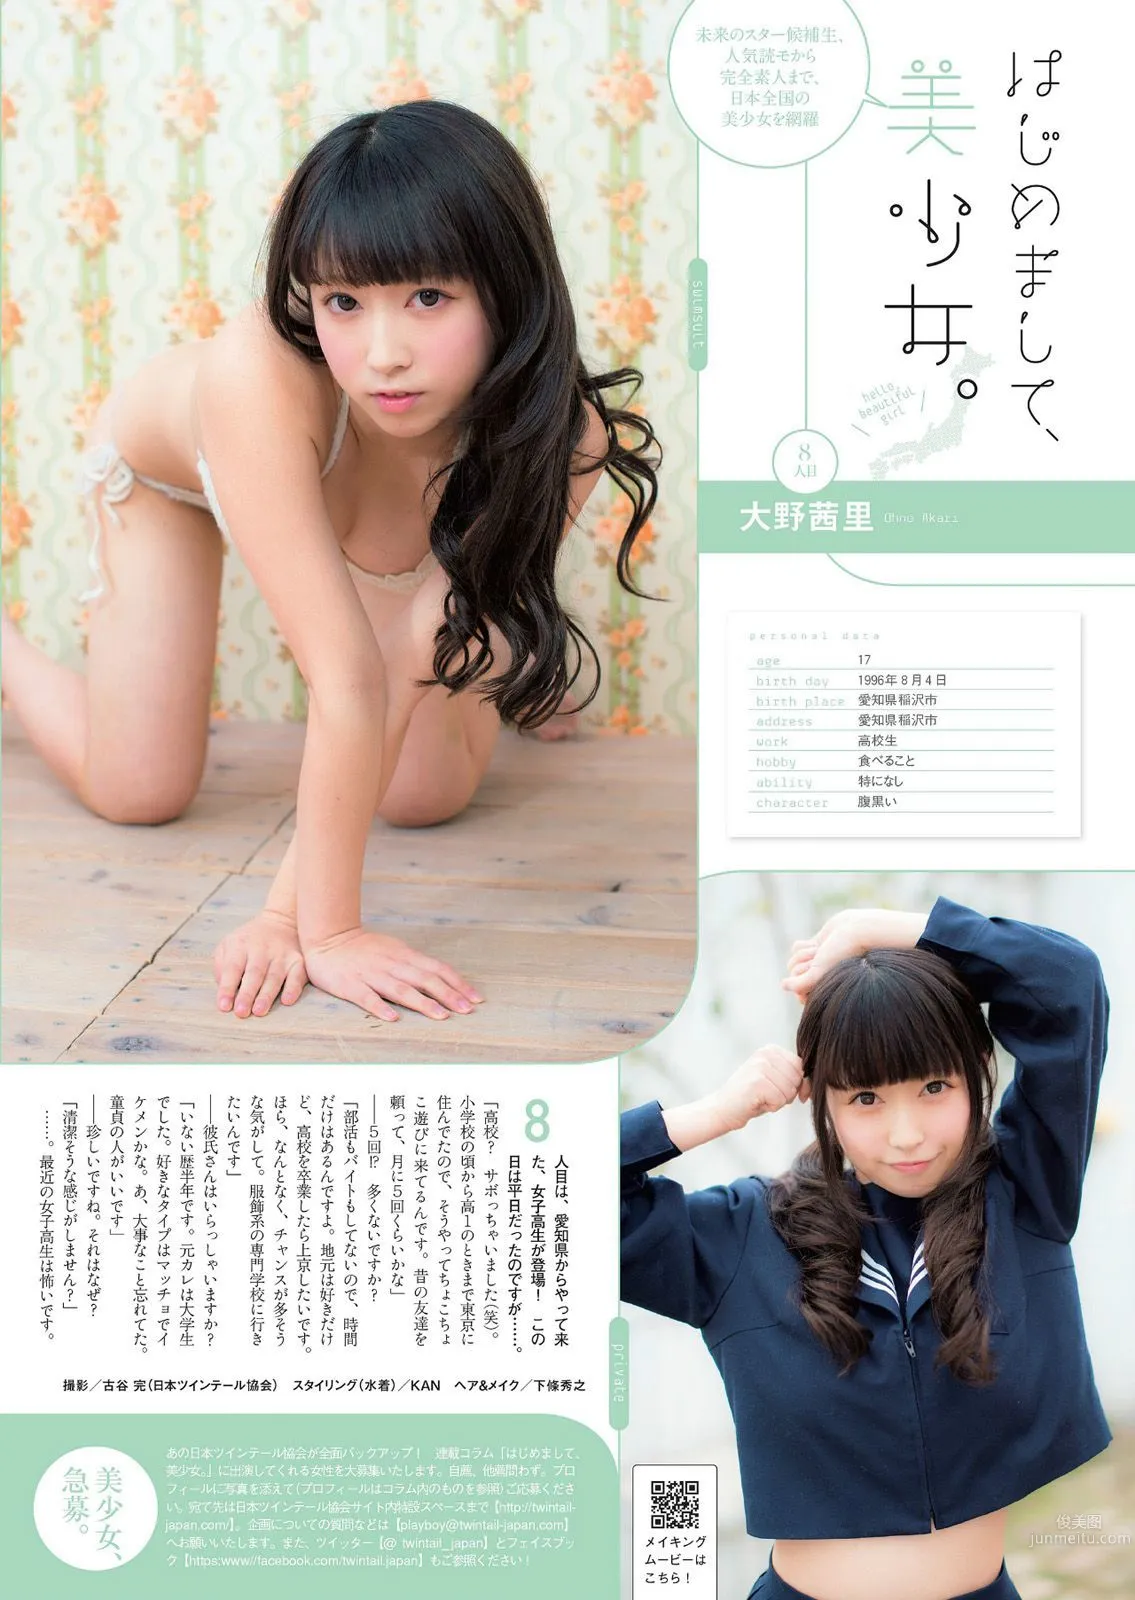 夏菜 白間美瑠 森崎友紀 道端アンジェリカ [Weekly Playboy] 2014年No.06 写真杂志22